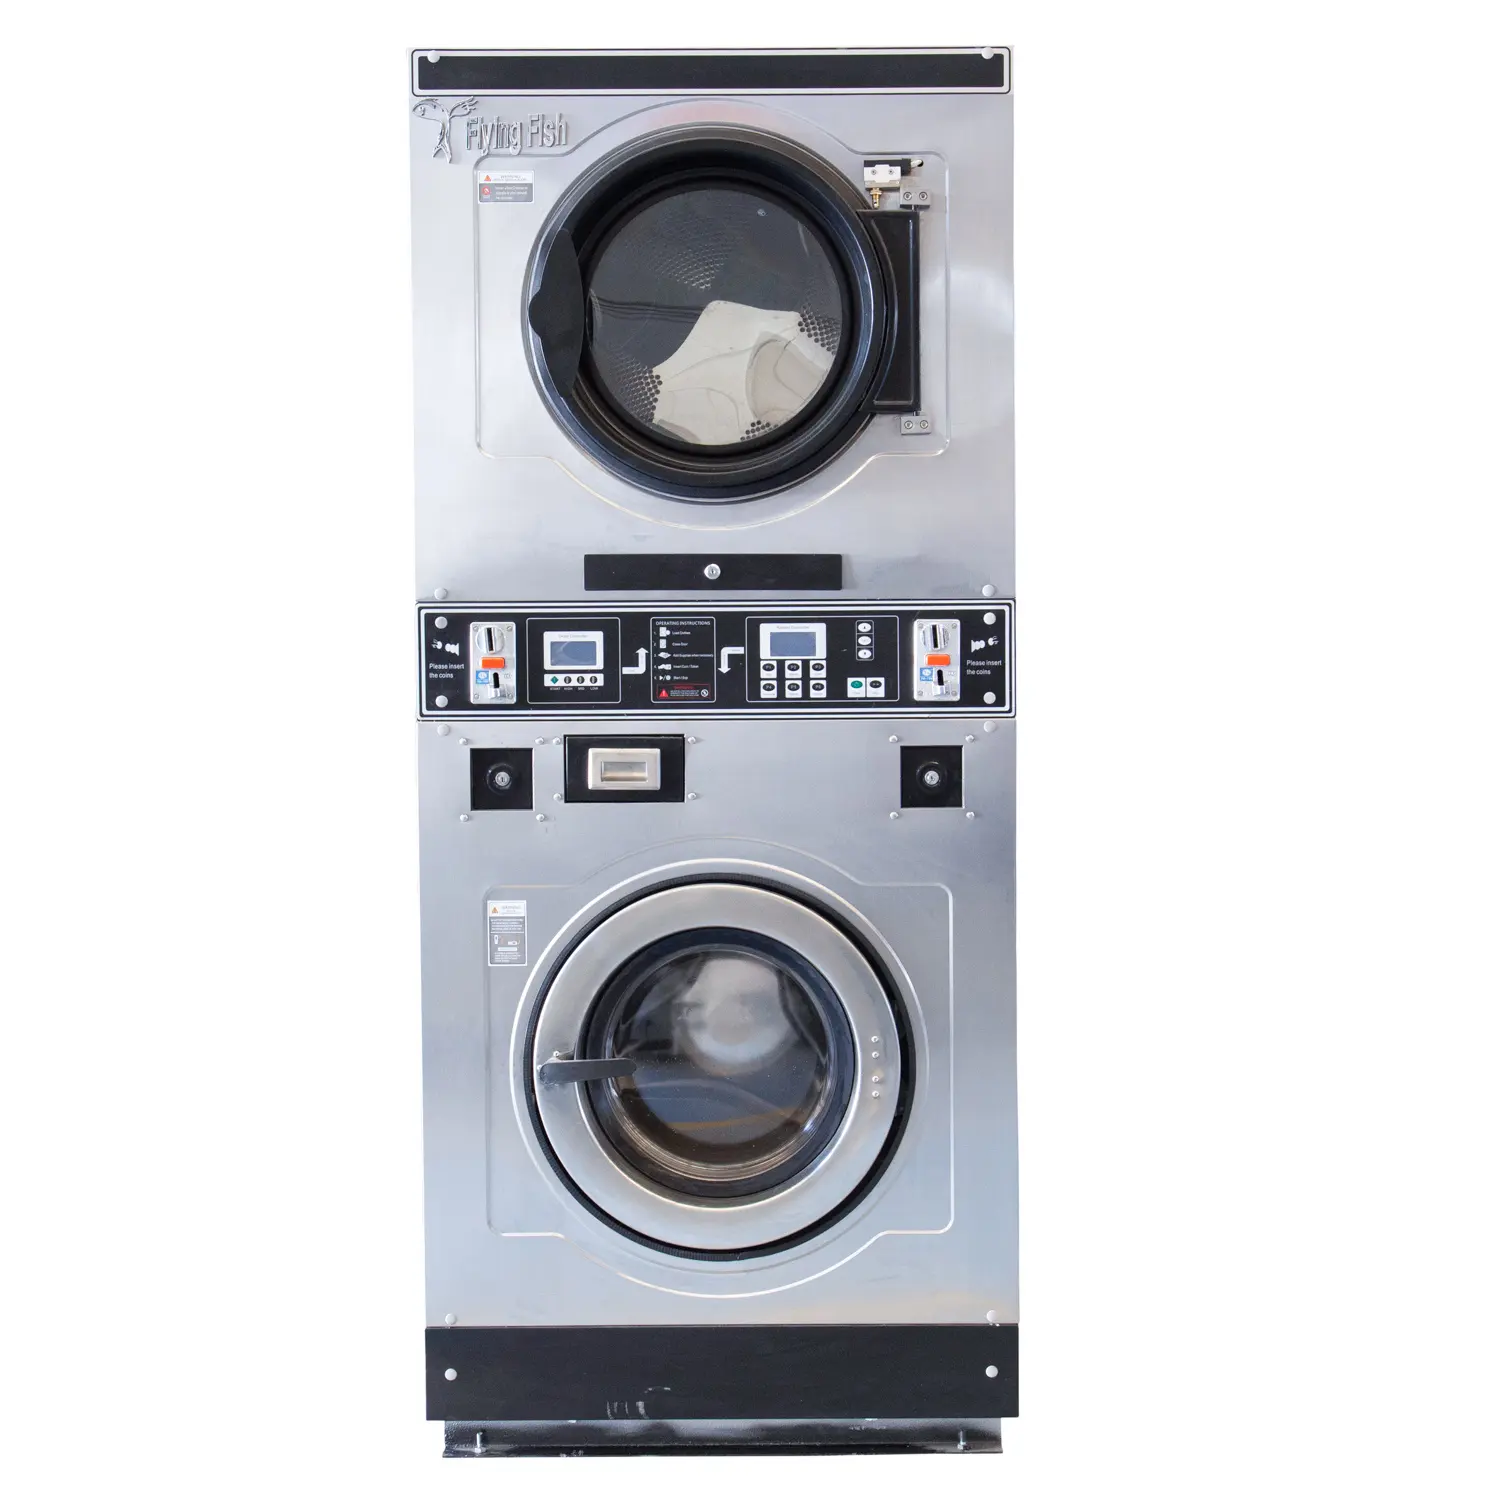 Ticari yığılmış yıkayıcı ve kurutma makinesi büyük çamaşır yıkama makinesi fiyat